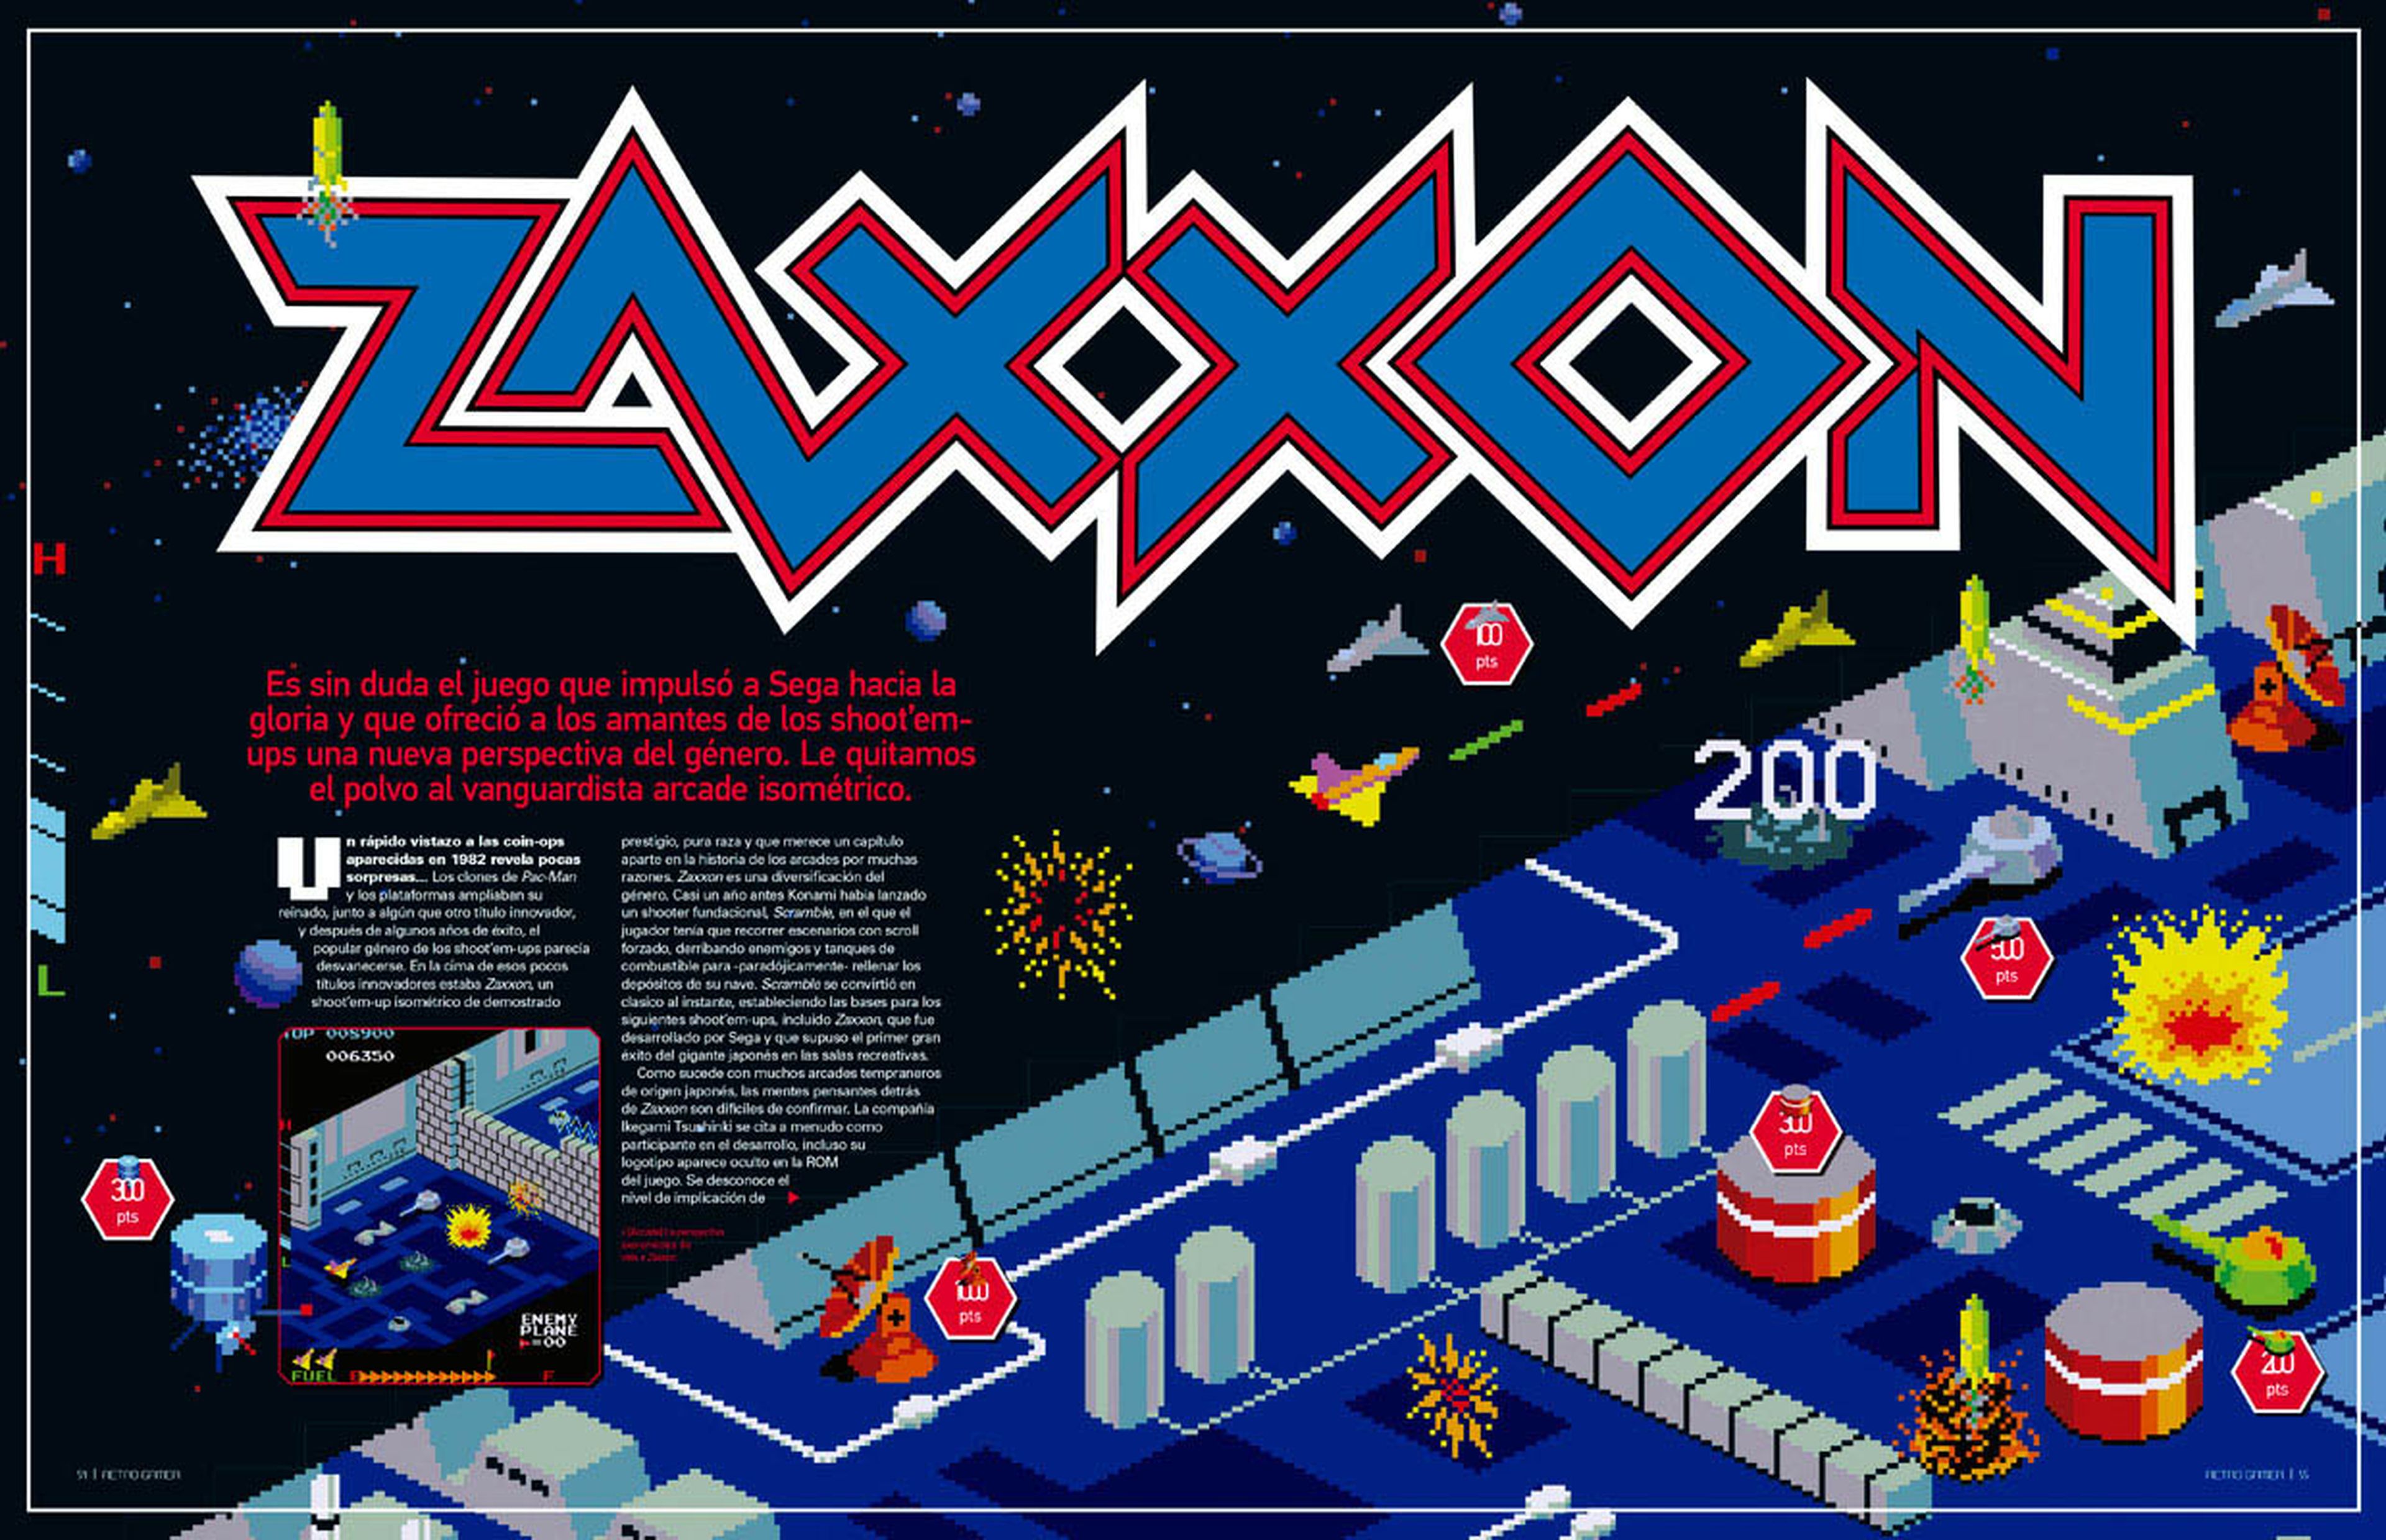 Retro Gamer 21 Zaxxon